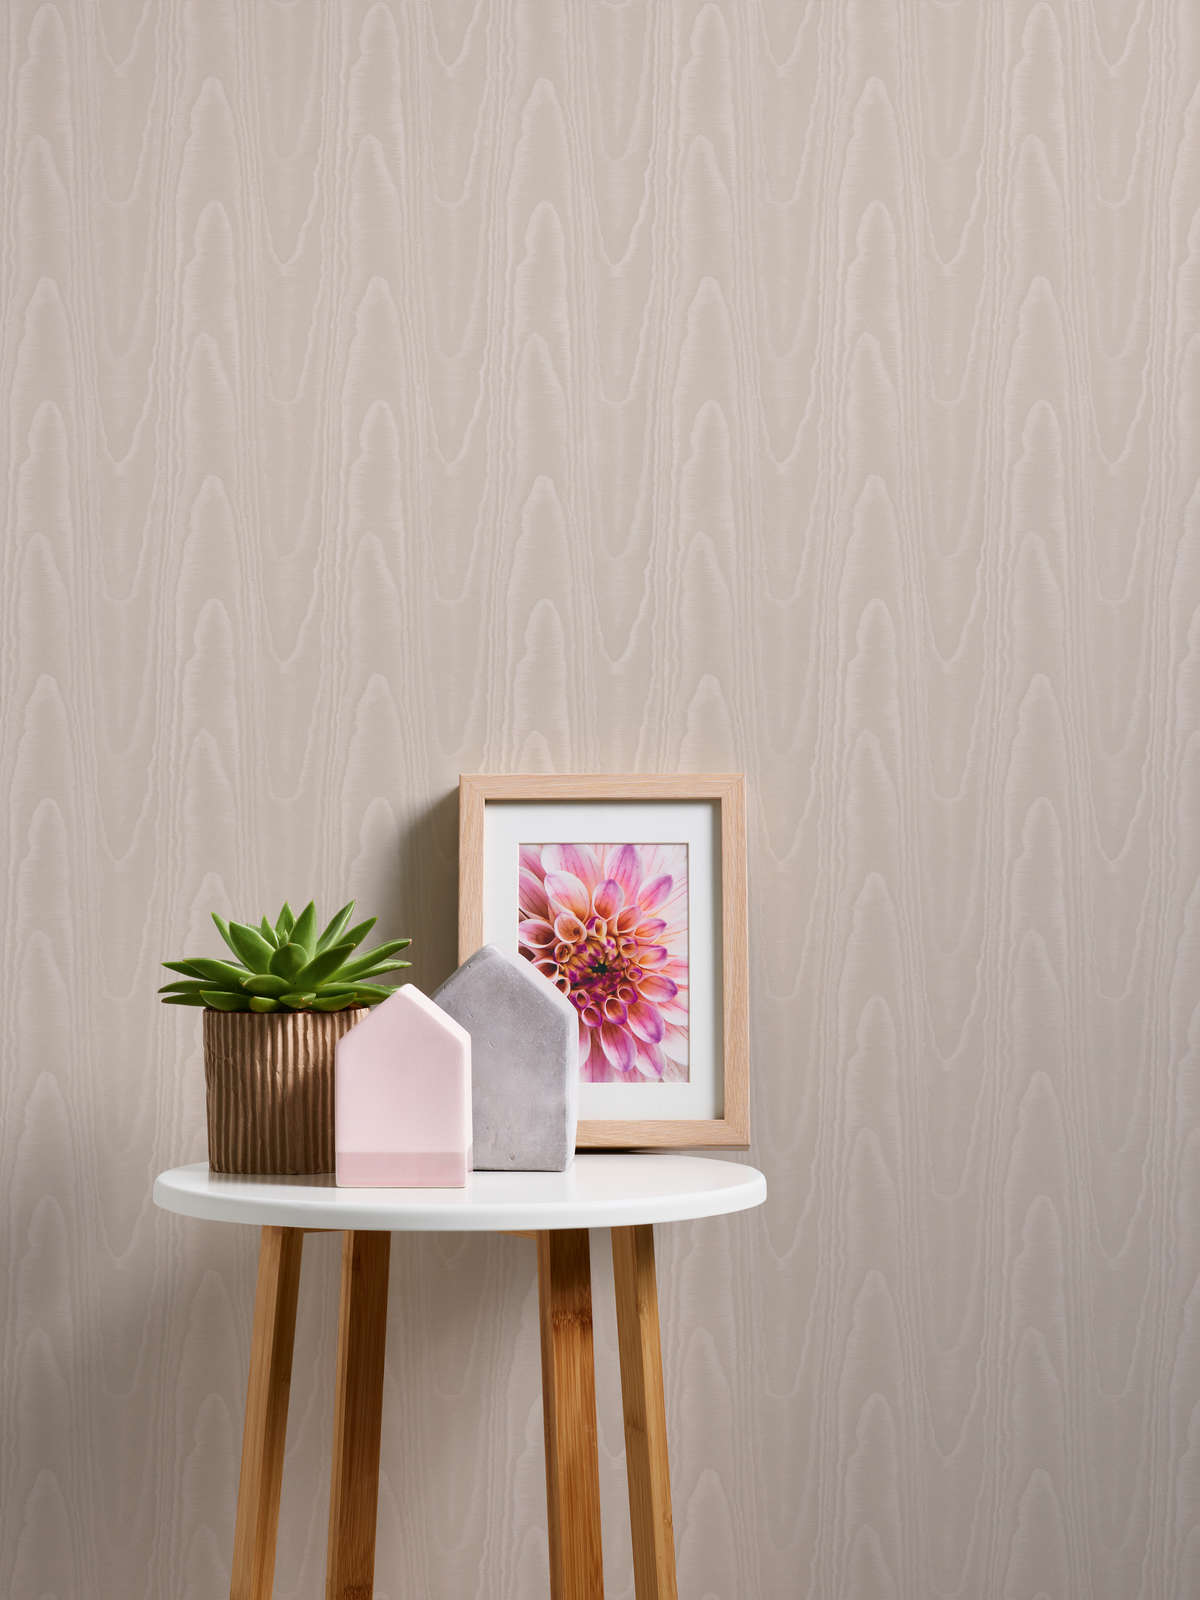             Cream non-woven wallpaper moiré effect & textile texture
        